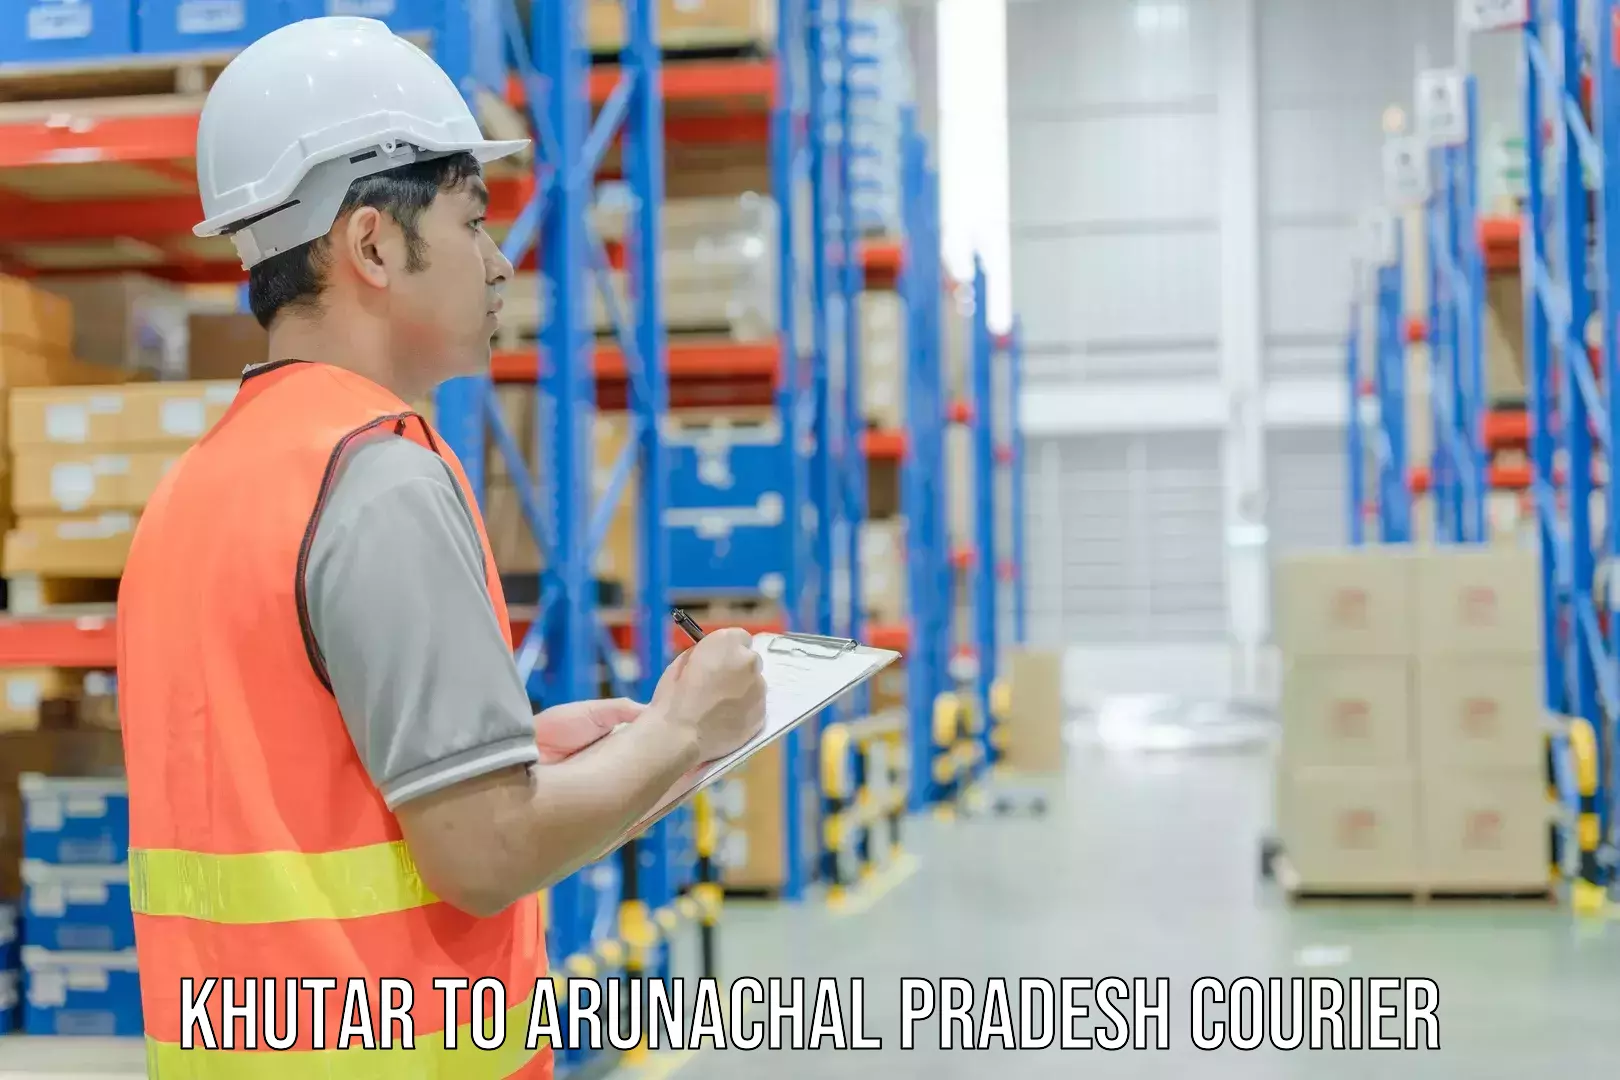 Courier services Khutar to Arunachal Pradesh